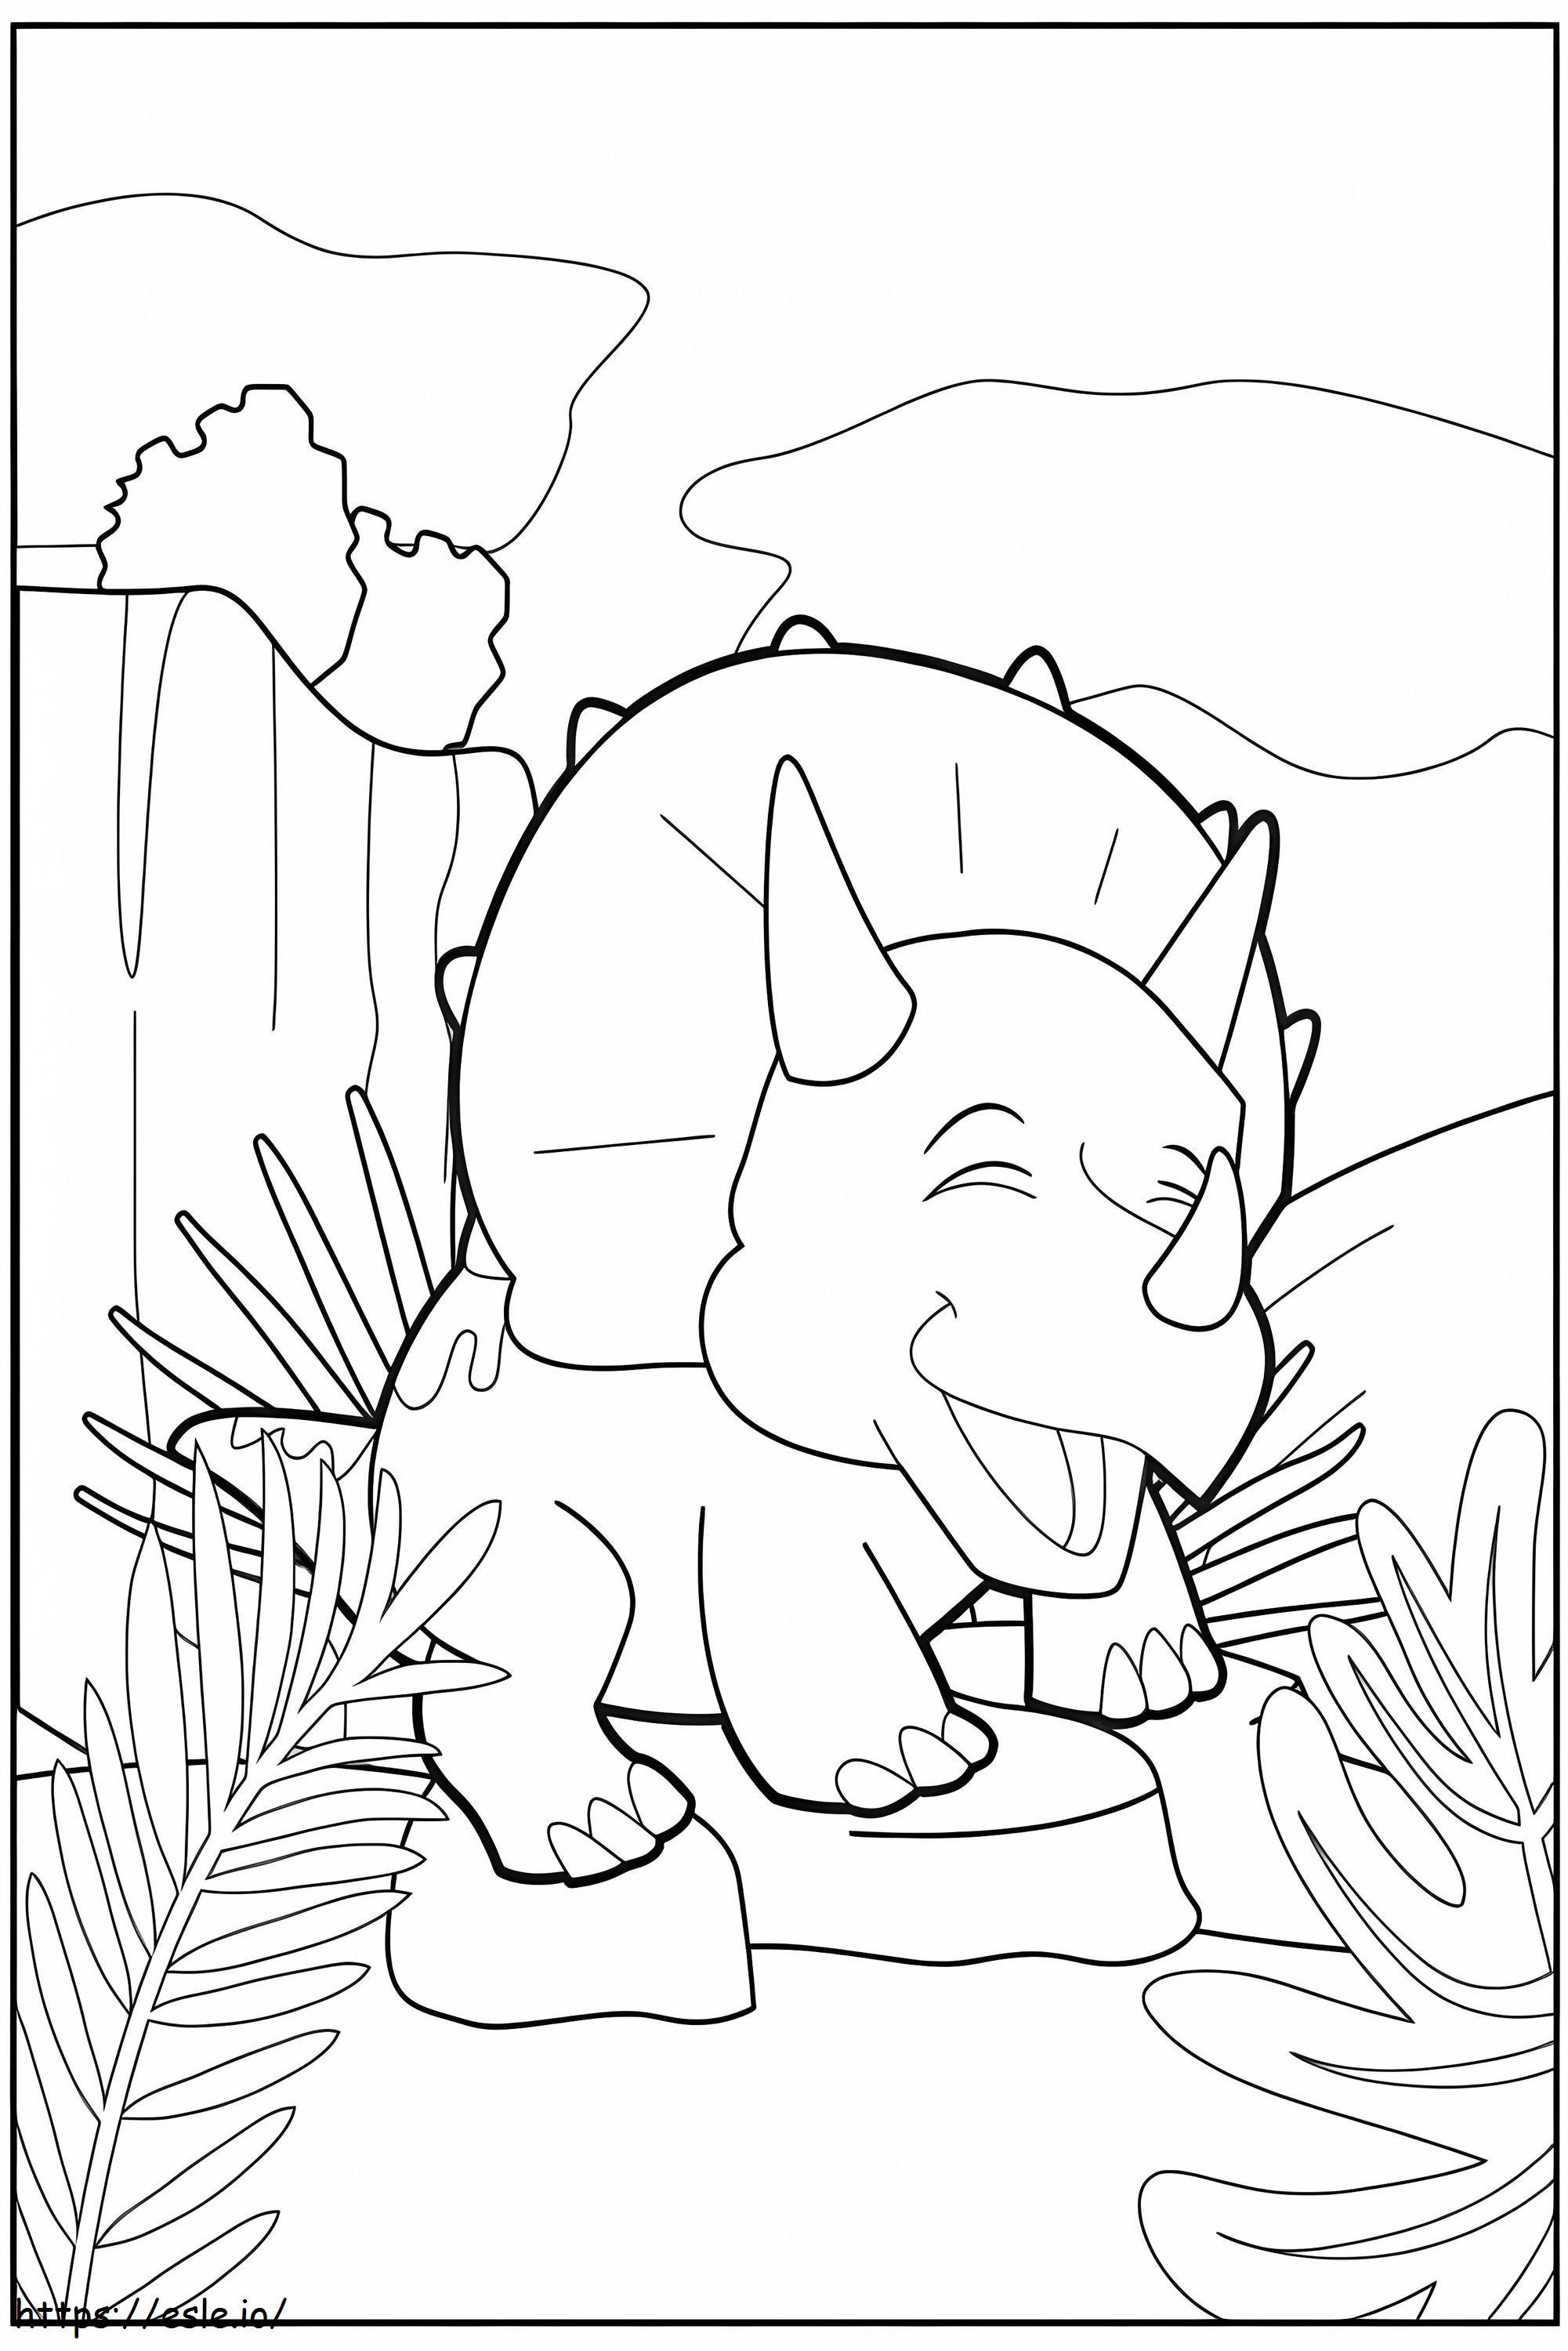 Triceratop Feliz coloring page